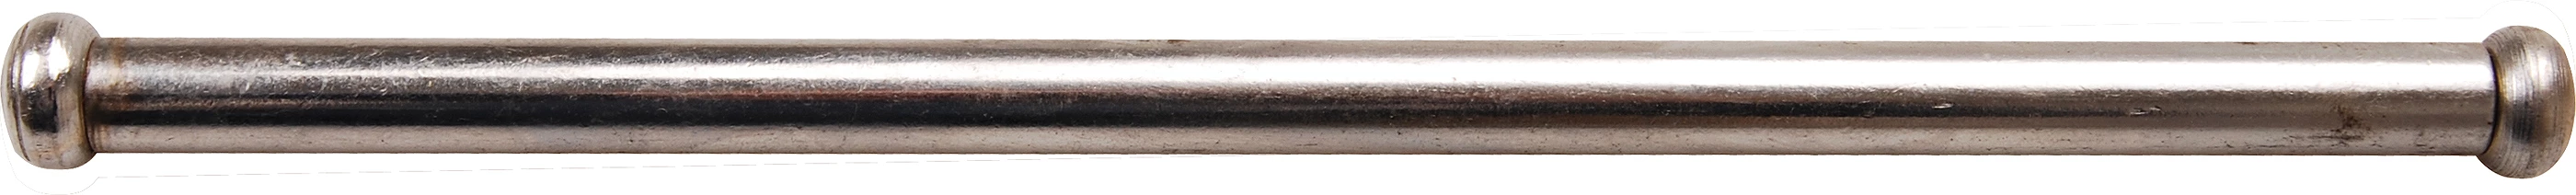 Stahlknebel für Schraubstöcke - 9 x 225 mm